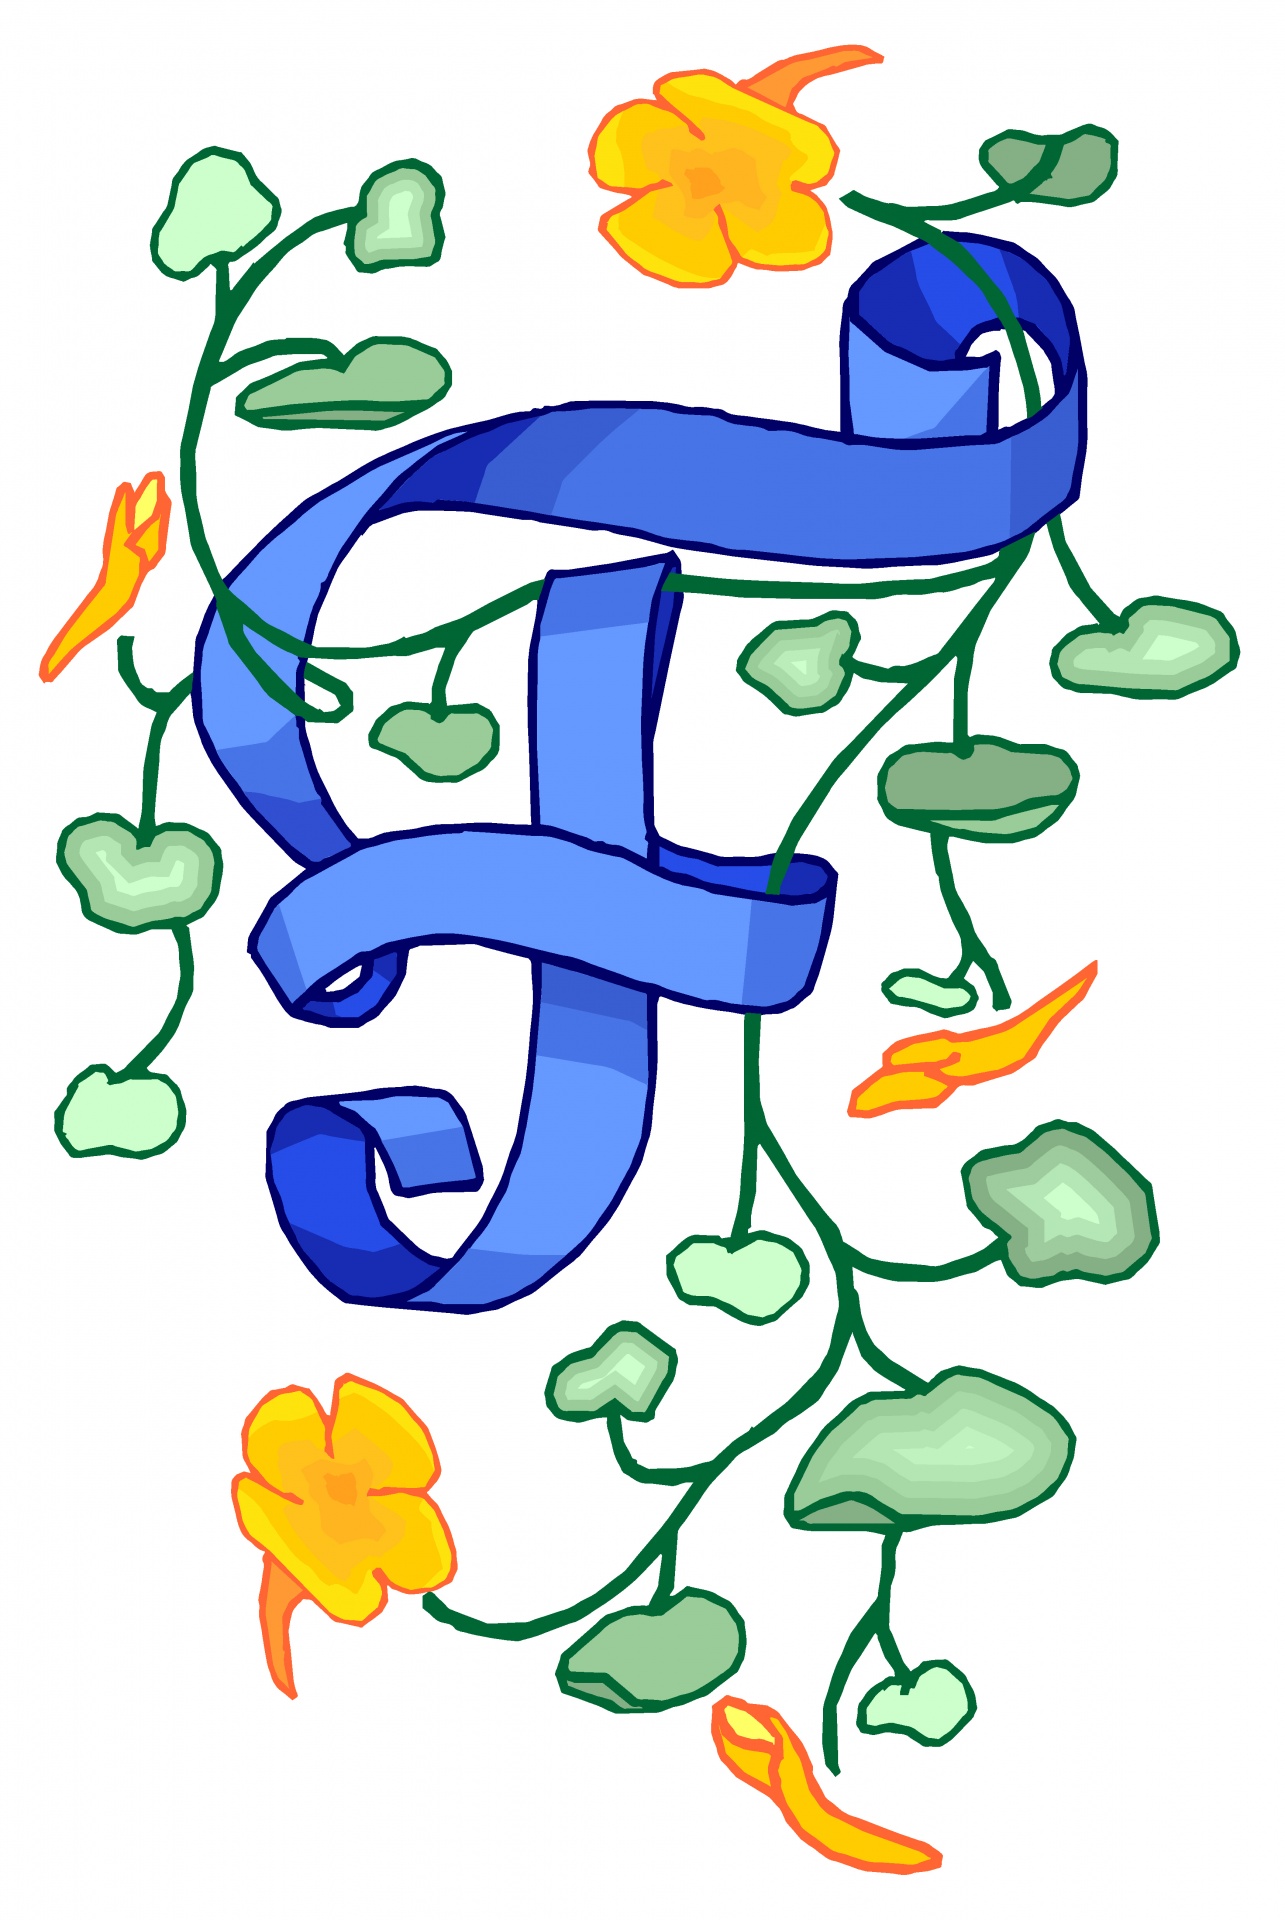 Florido azul da letra F